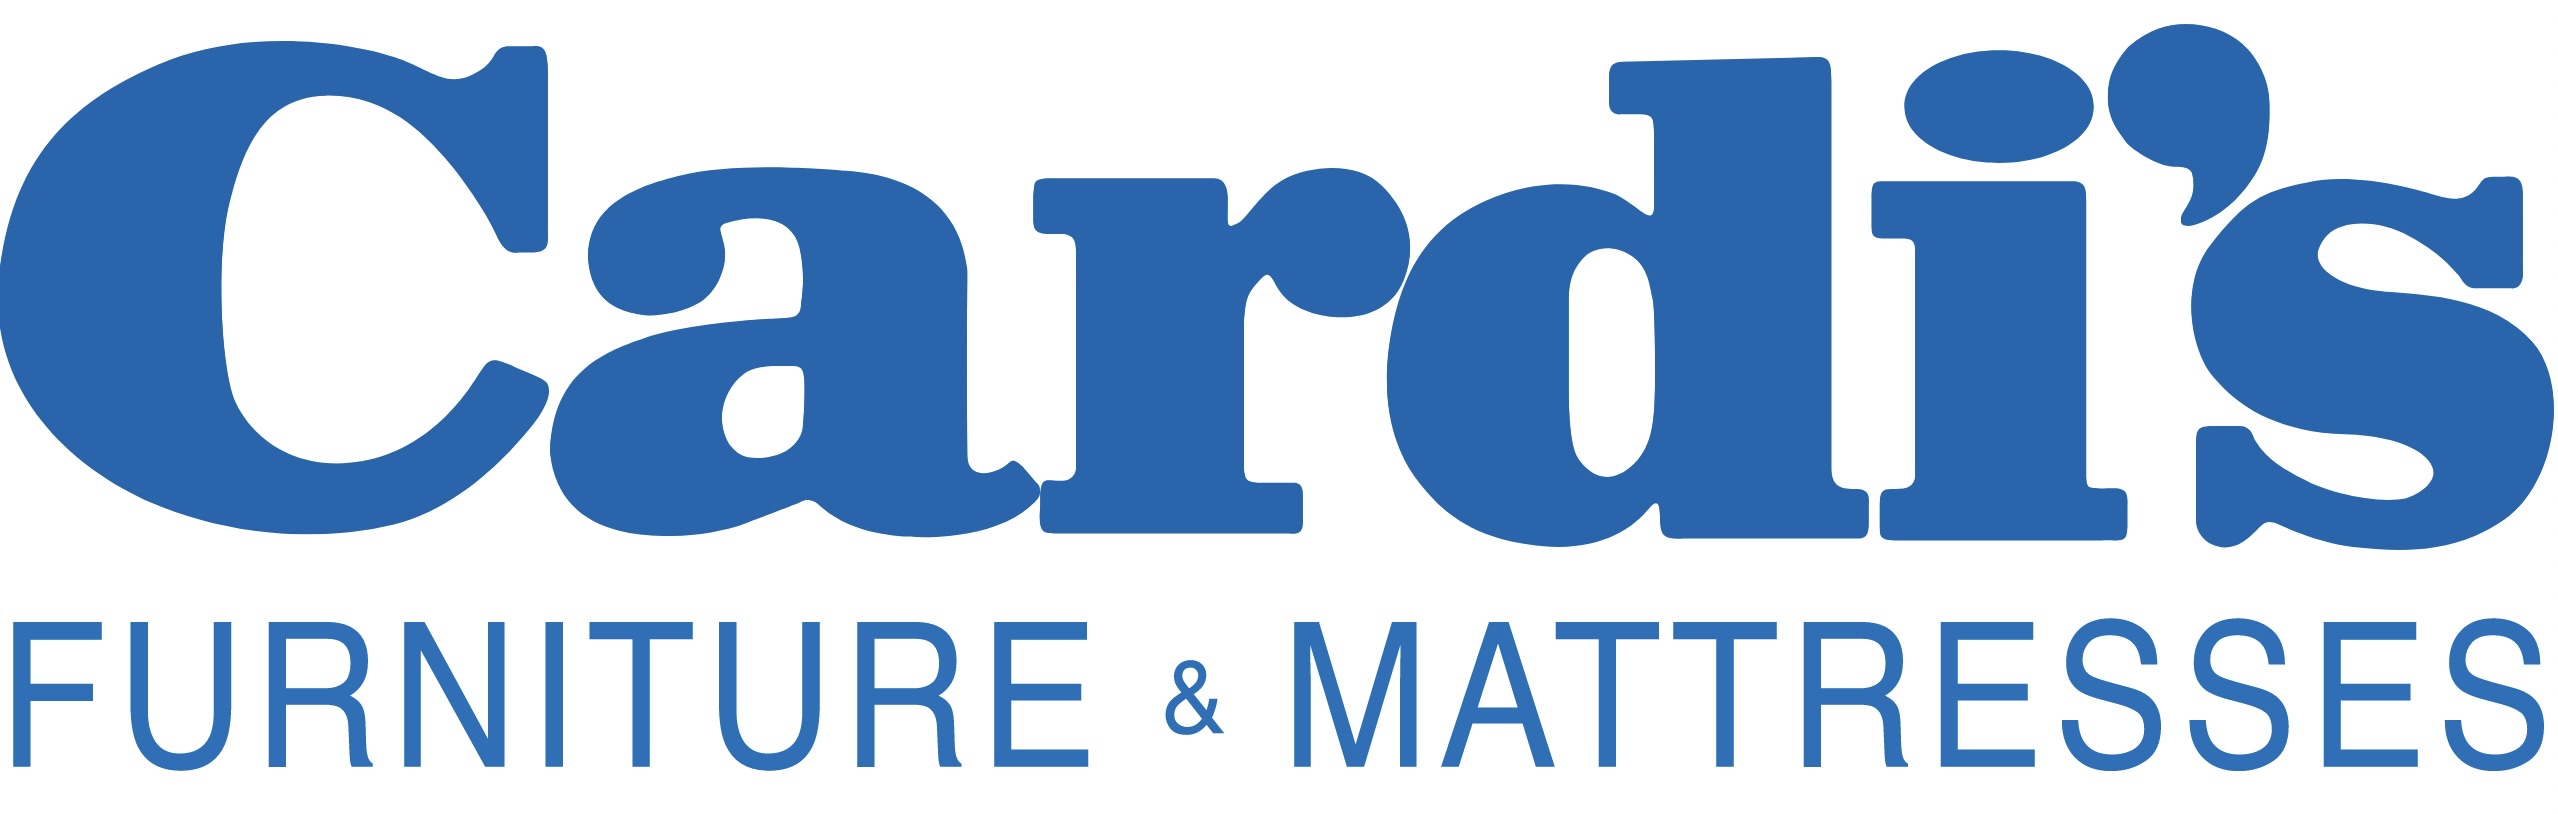 Cardi's logo